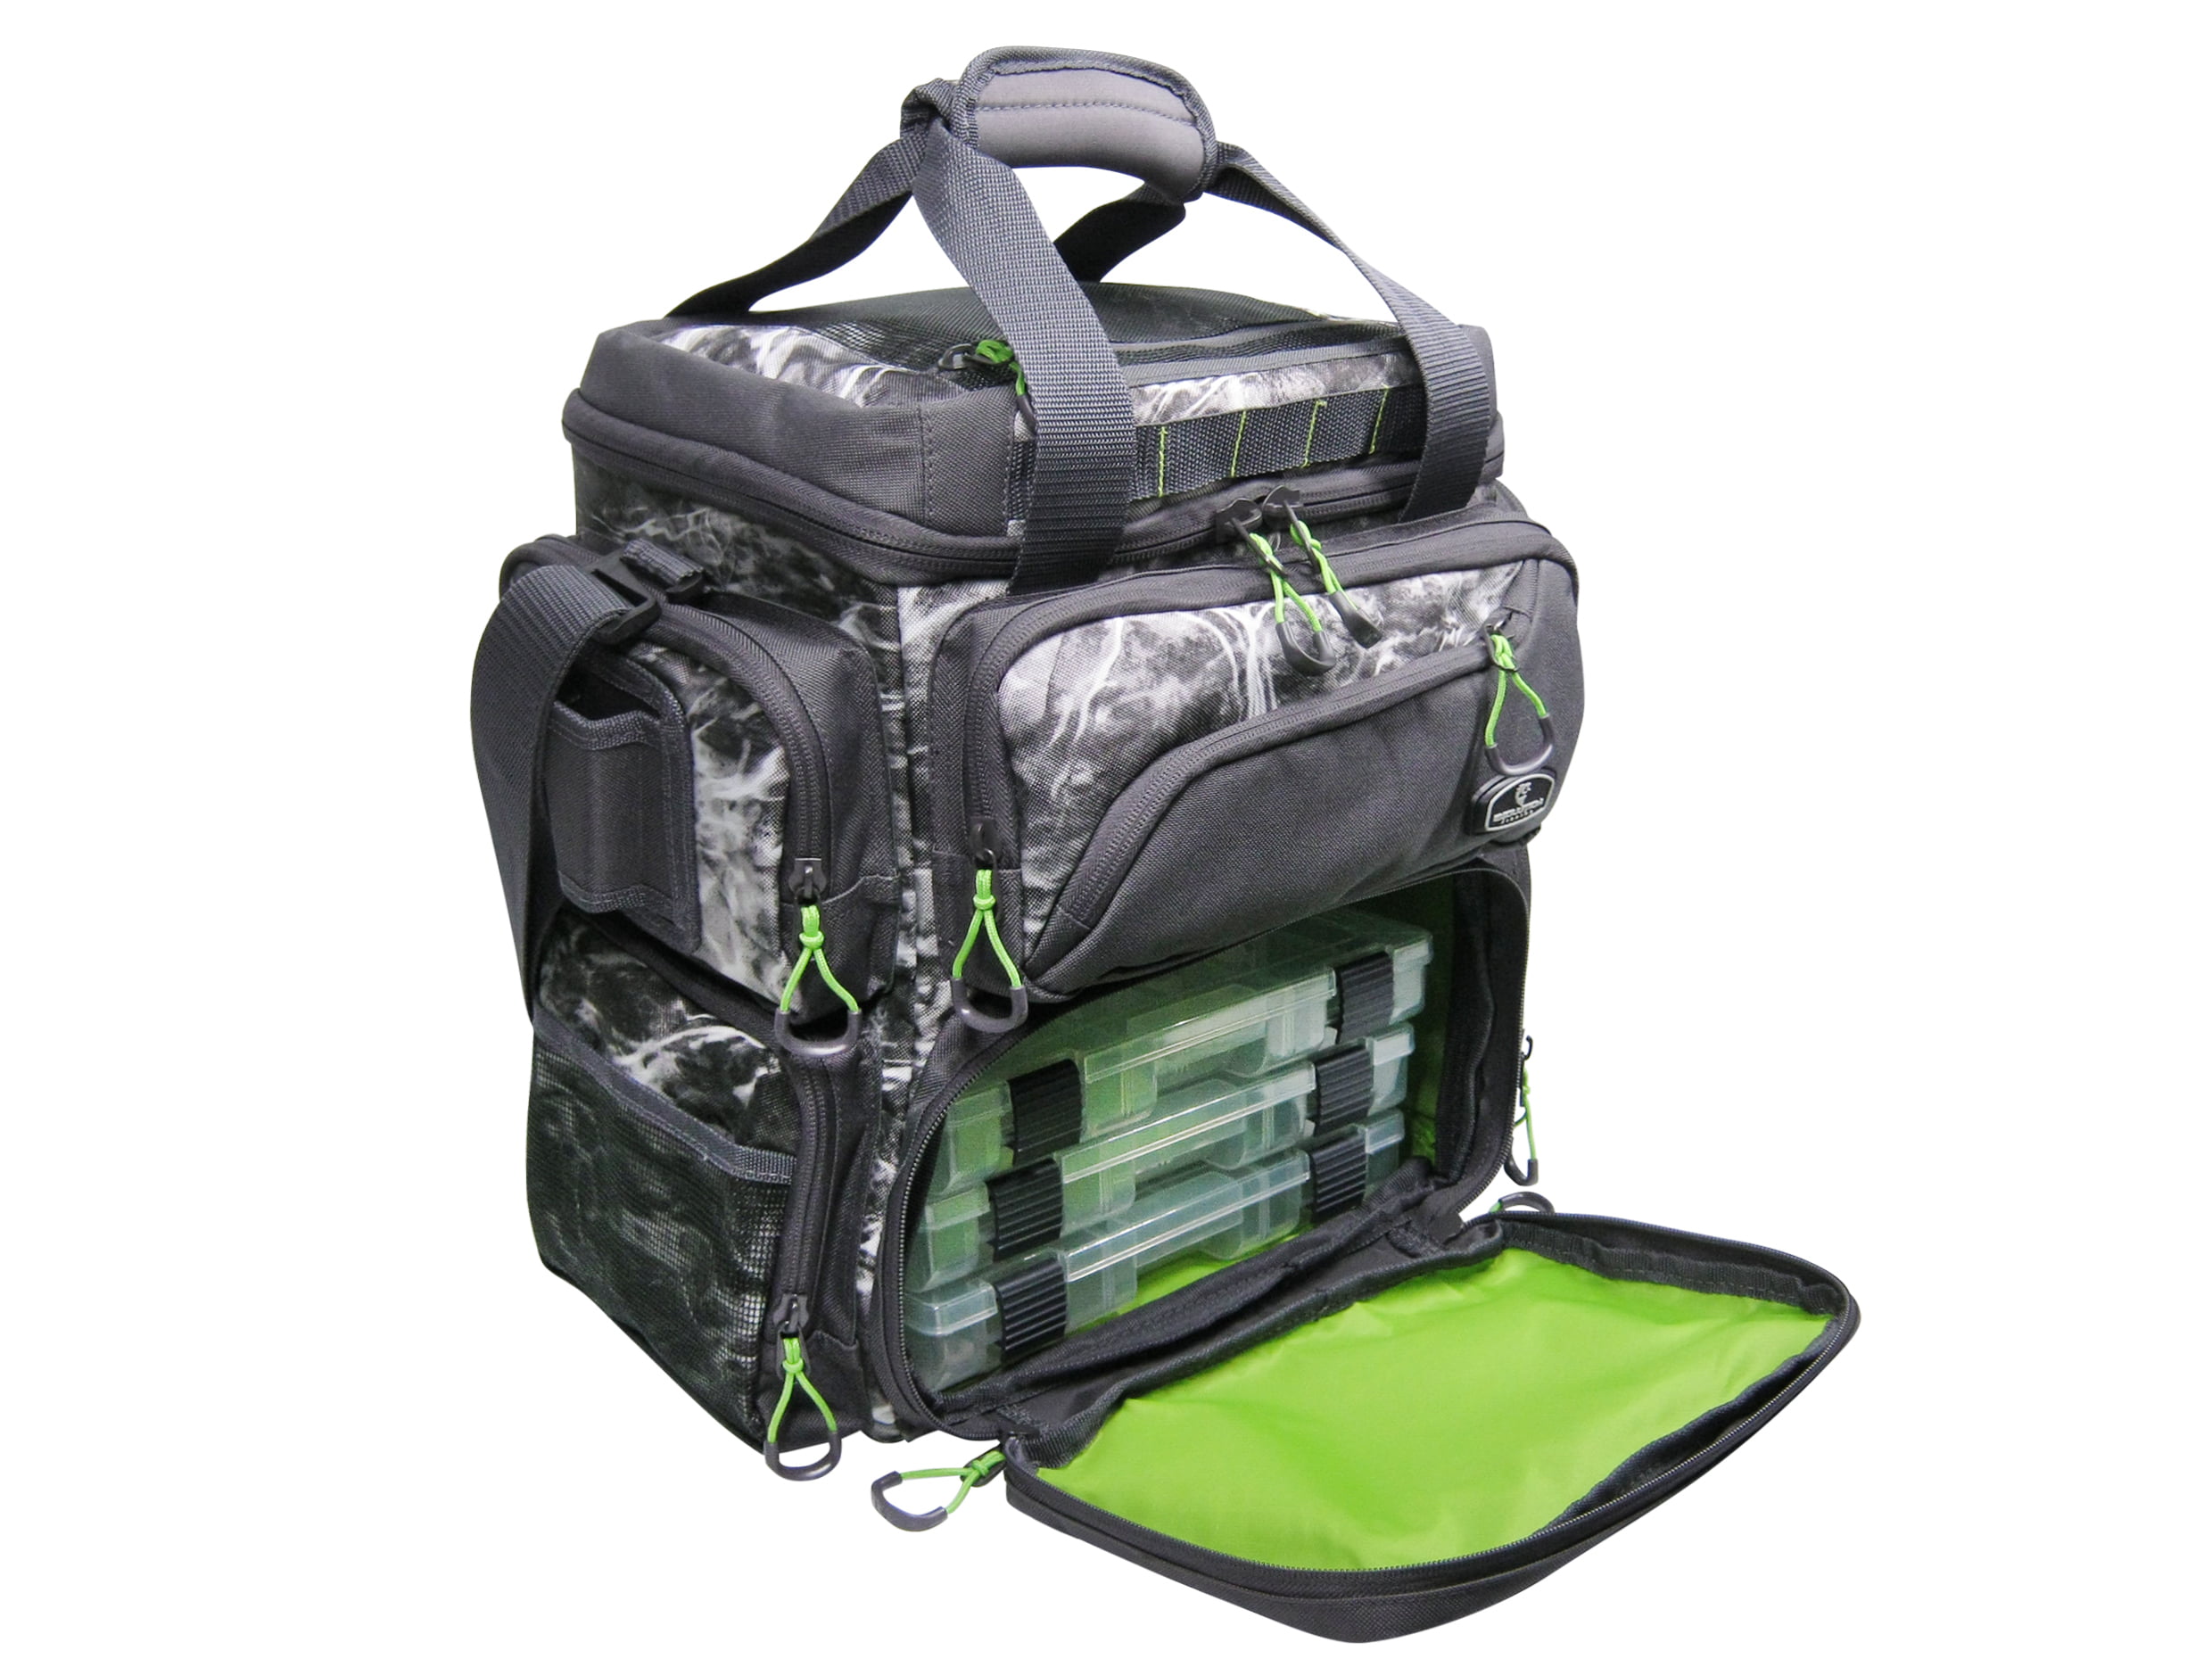  SNDMOR Fishing Bag, Multi-Pocket Large Tackle Bag